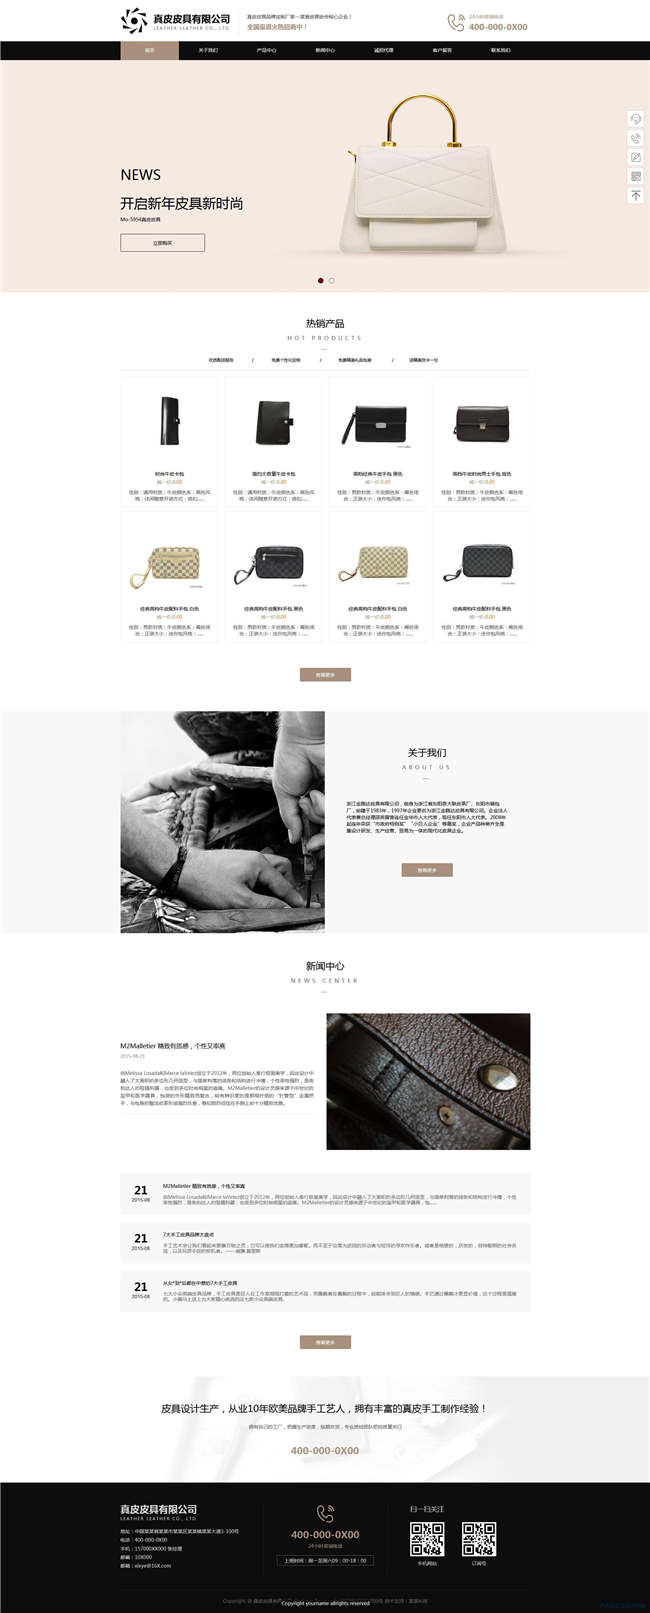 皮具公司纺织服饰鞋帽箱包网站WP整站模板(含手机版)预览图